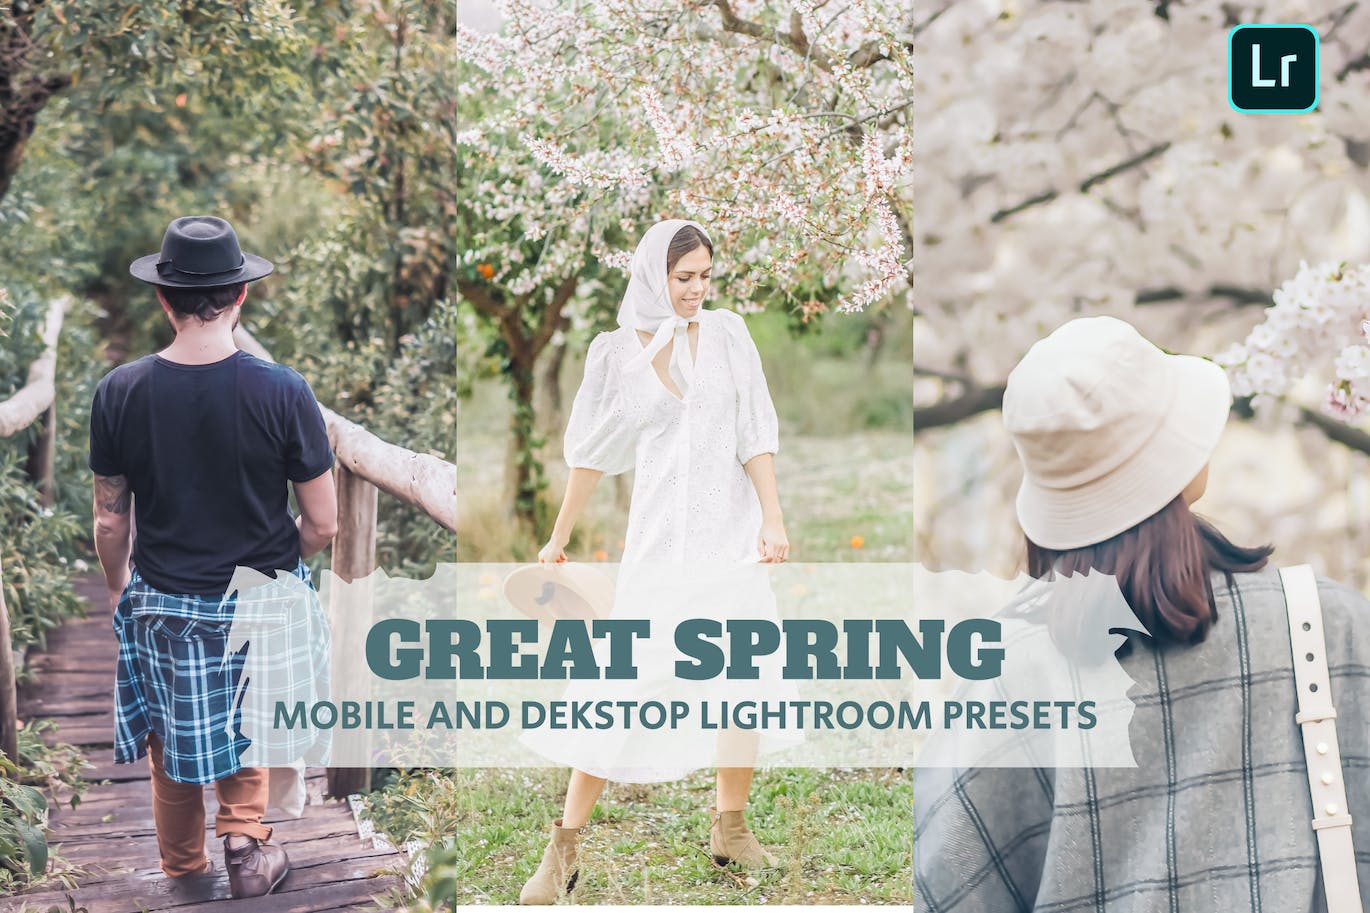 春天摄影Lightroom调色预设下载 Great Spring Lightroom Presets Dekstop and Mobile 插件预设 第1张